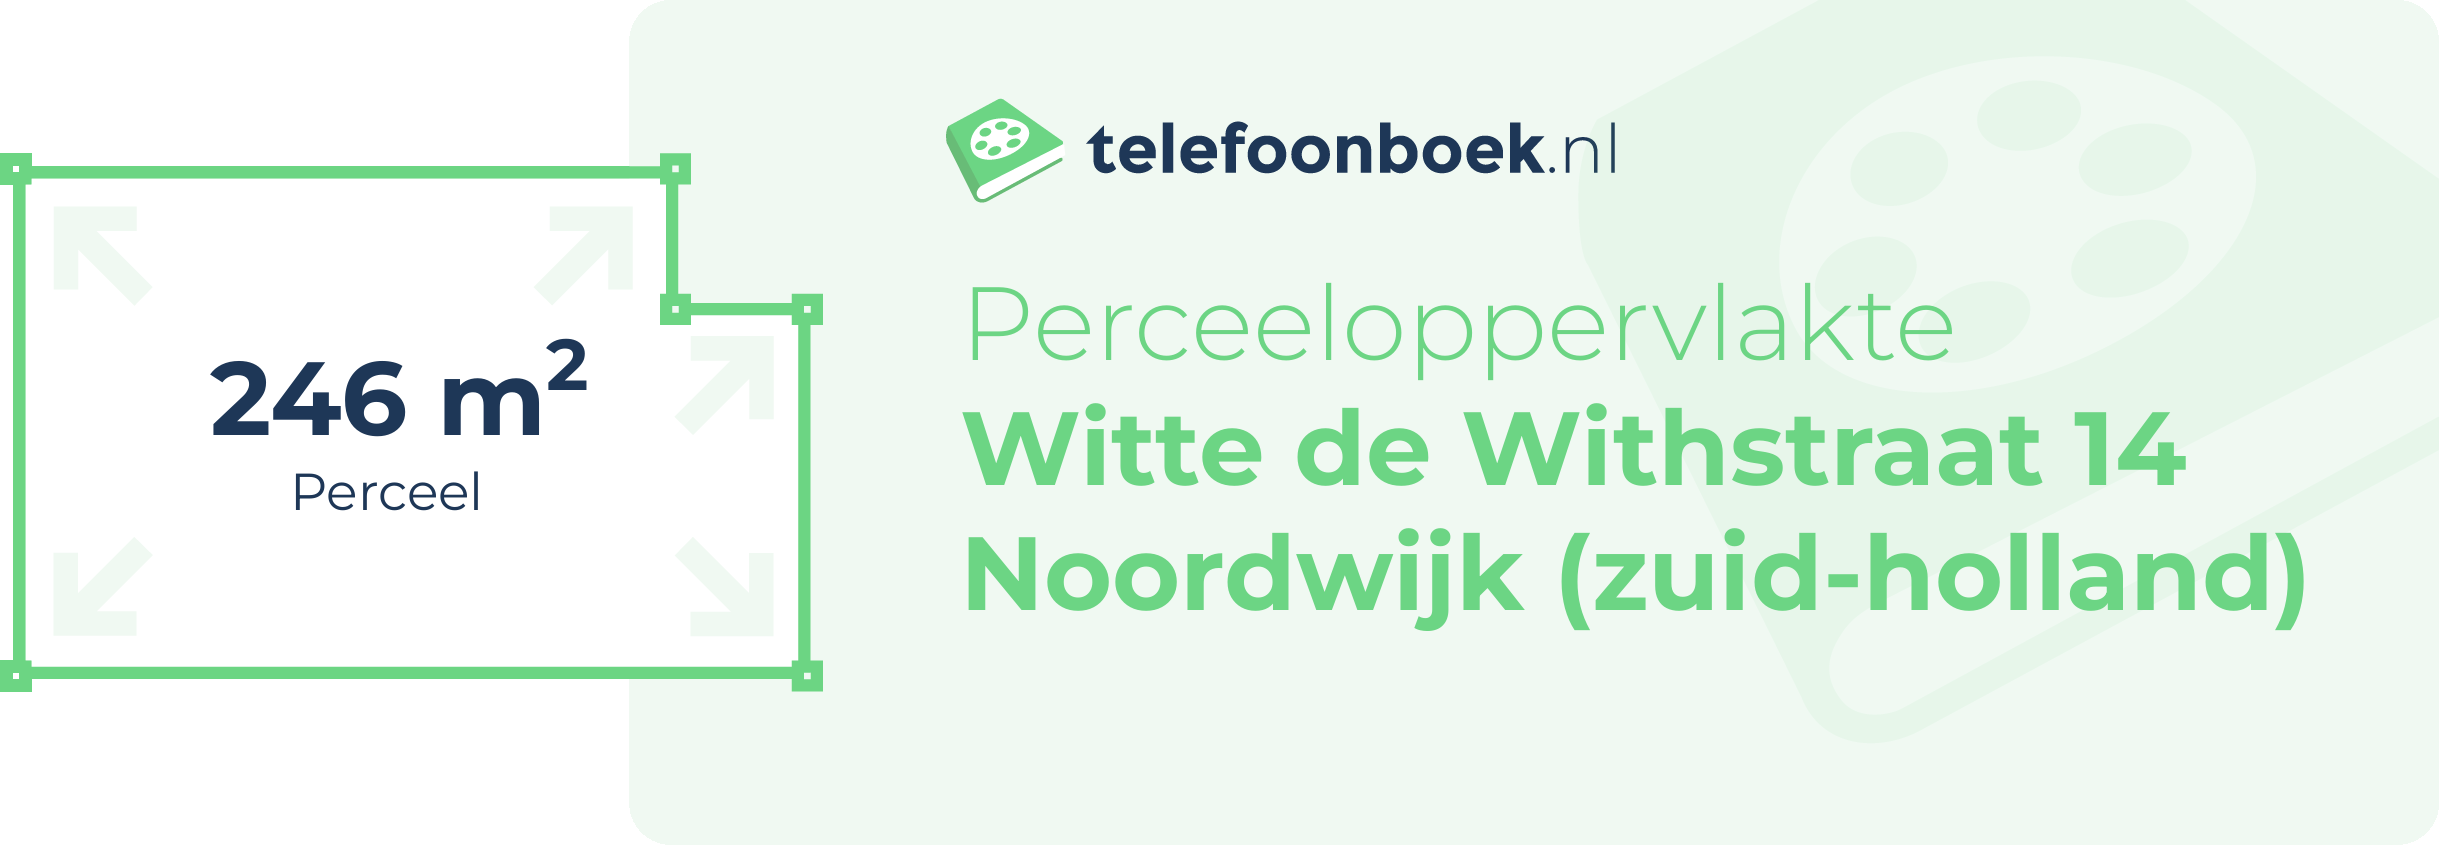 Perceeloppervlakte Witte De Withstraat 14 Noordwijk (Zuid-Holland)